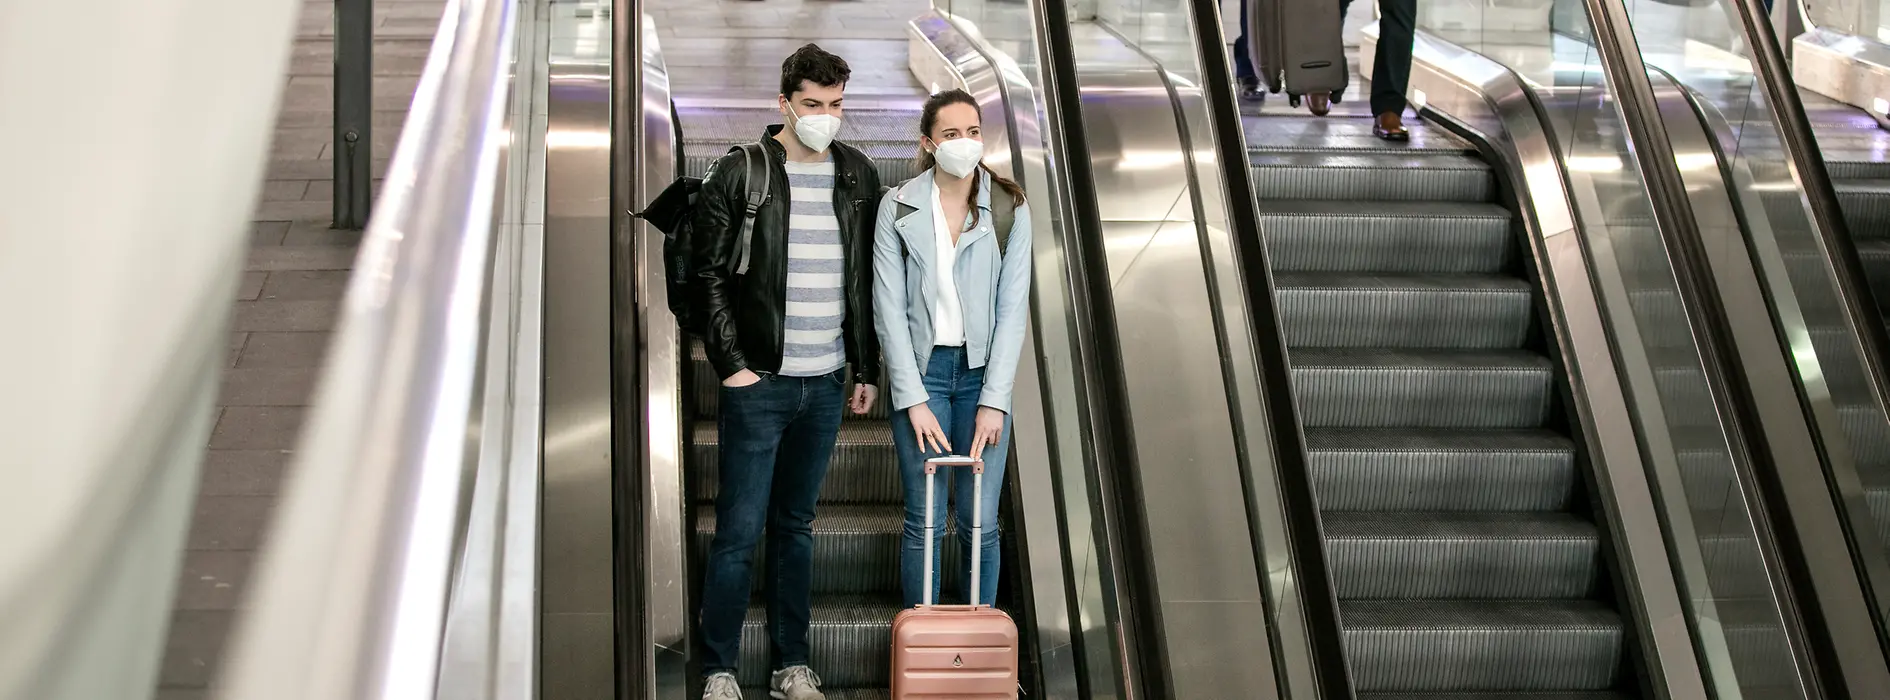 Menschen mit Masken am Bahnhof